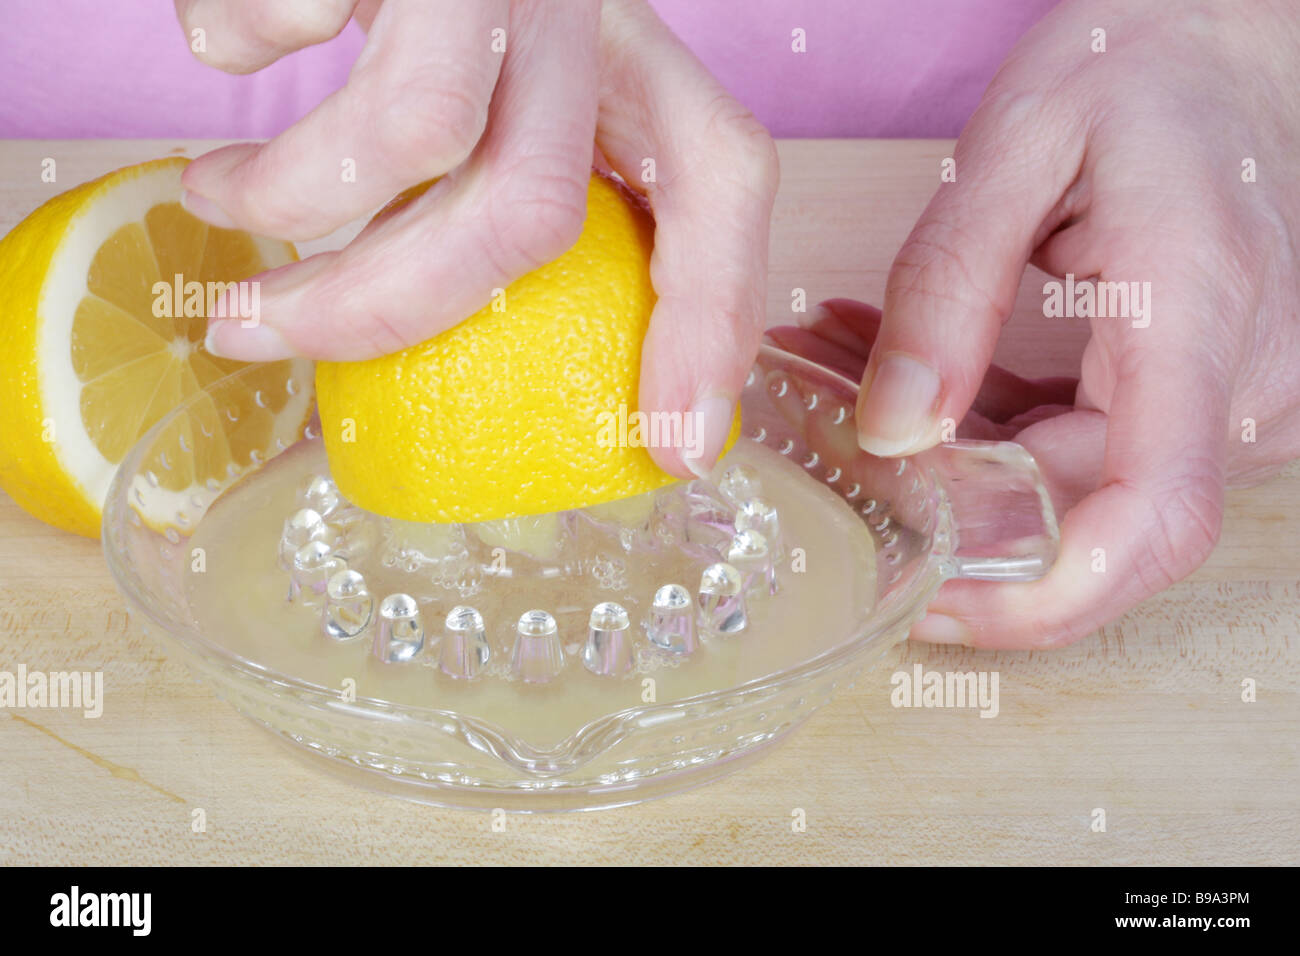 La donna a spremere il succo del limone Modello rilasciato Foto Stock